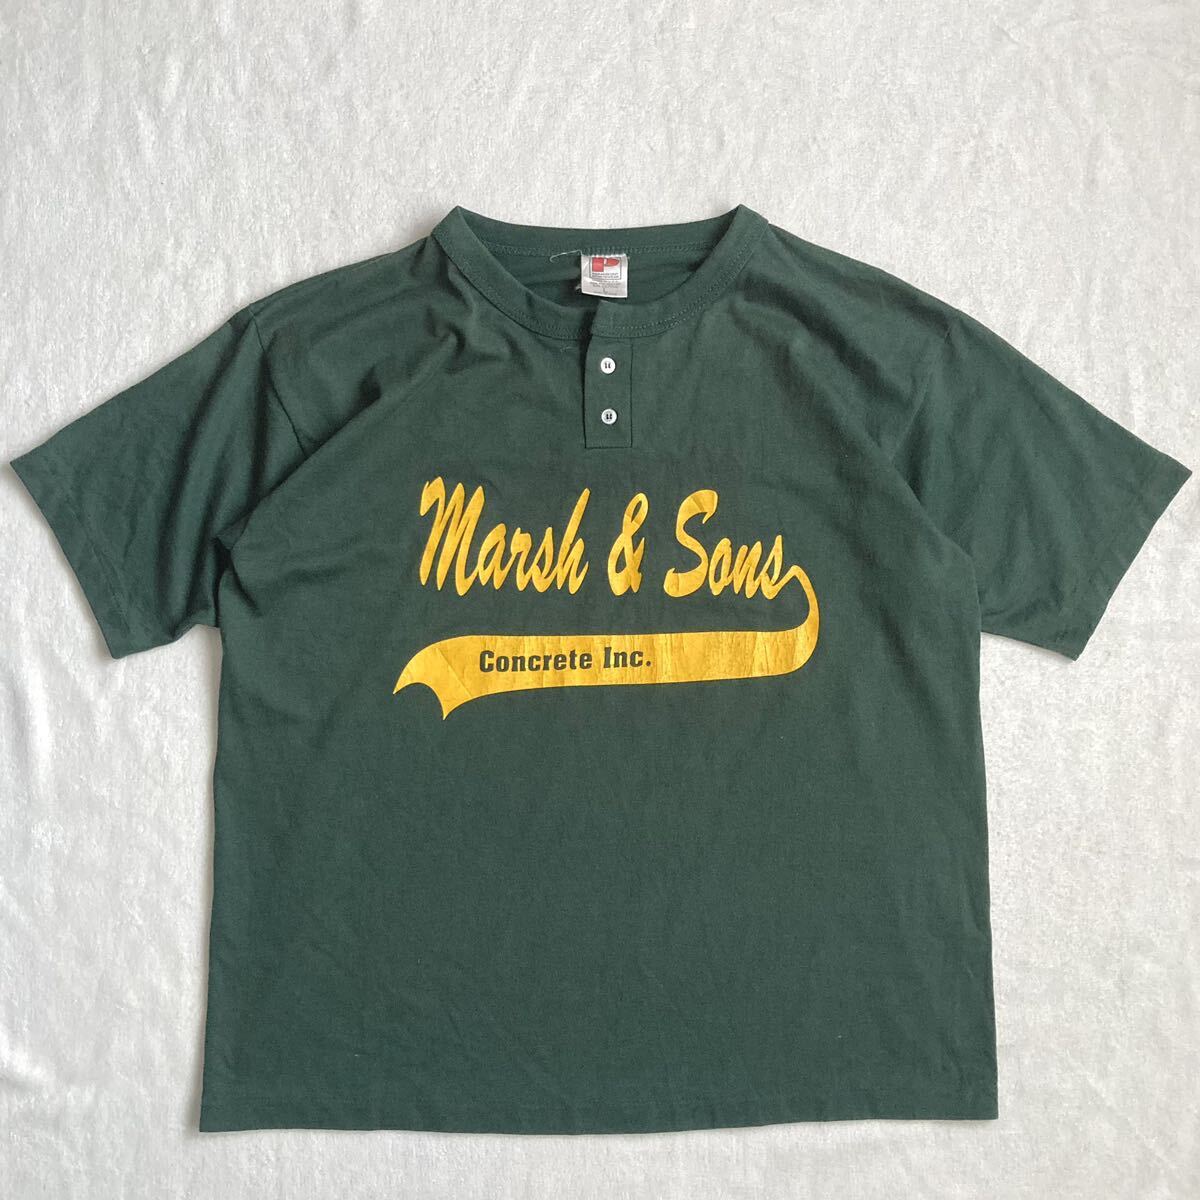 90s USA пр-во   PARAMOUNT SPORTSWEAR ...  футболка  vintage t shirt